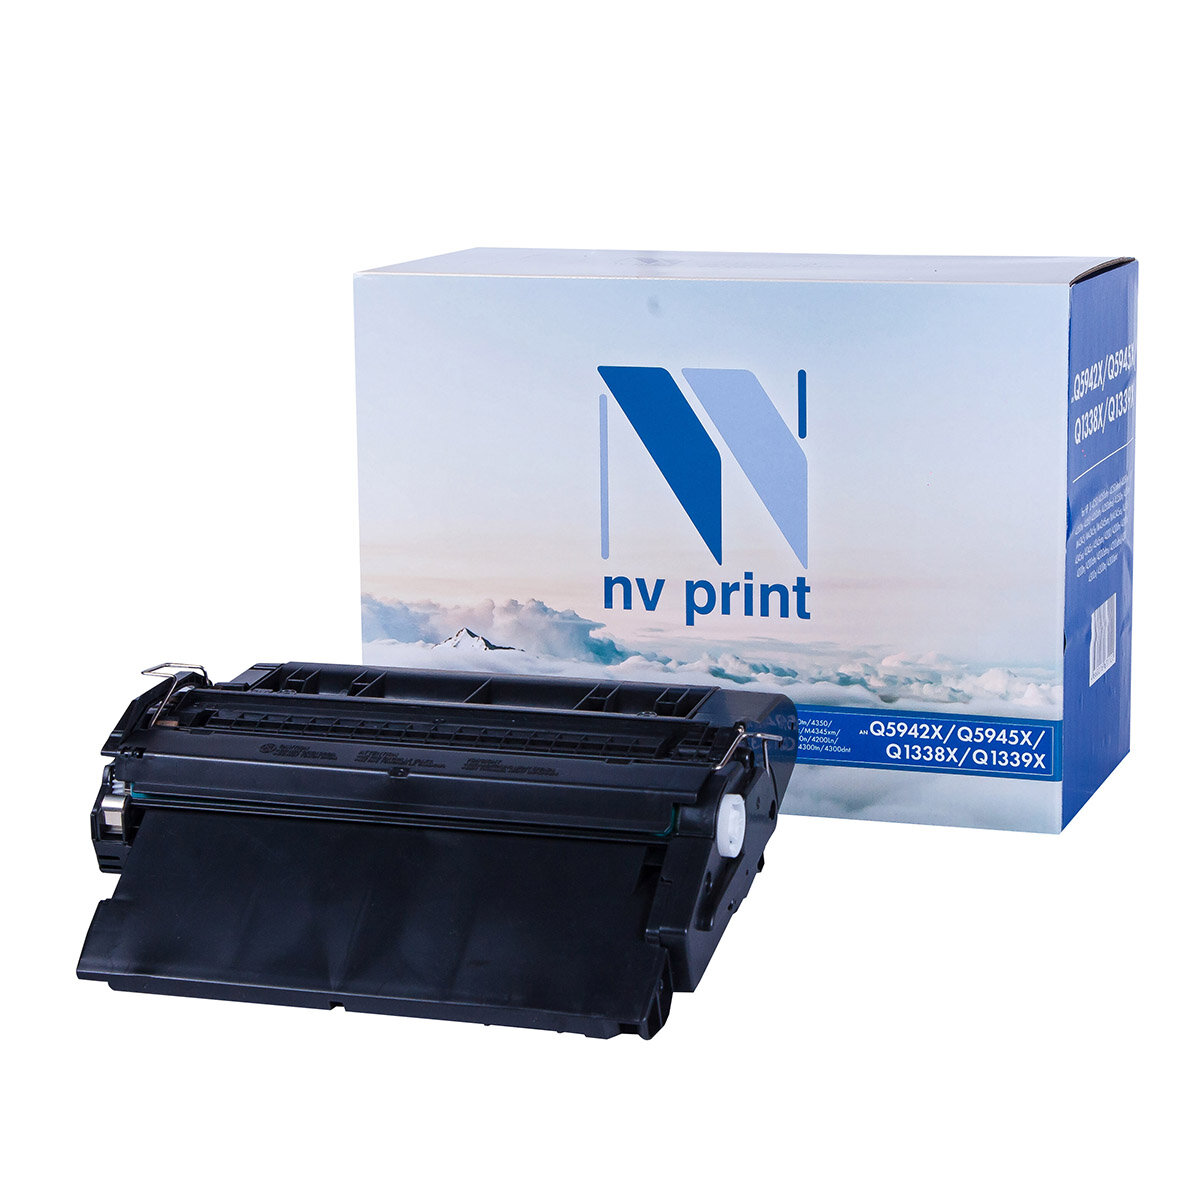 NV Print Картридж NVP совместимый NV-Q5942X/Q5945X/Q1338X/Q1339X